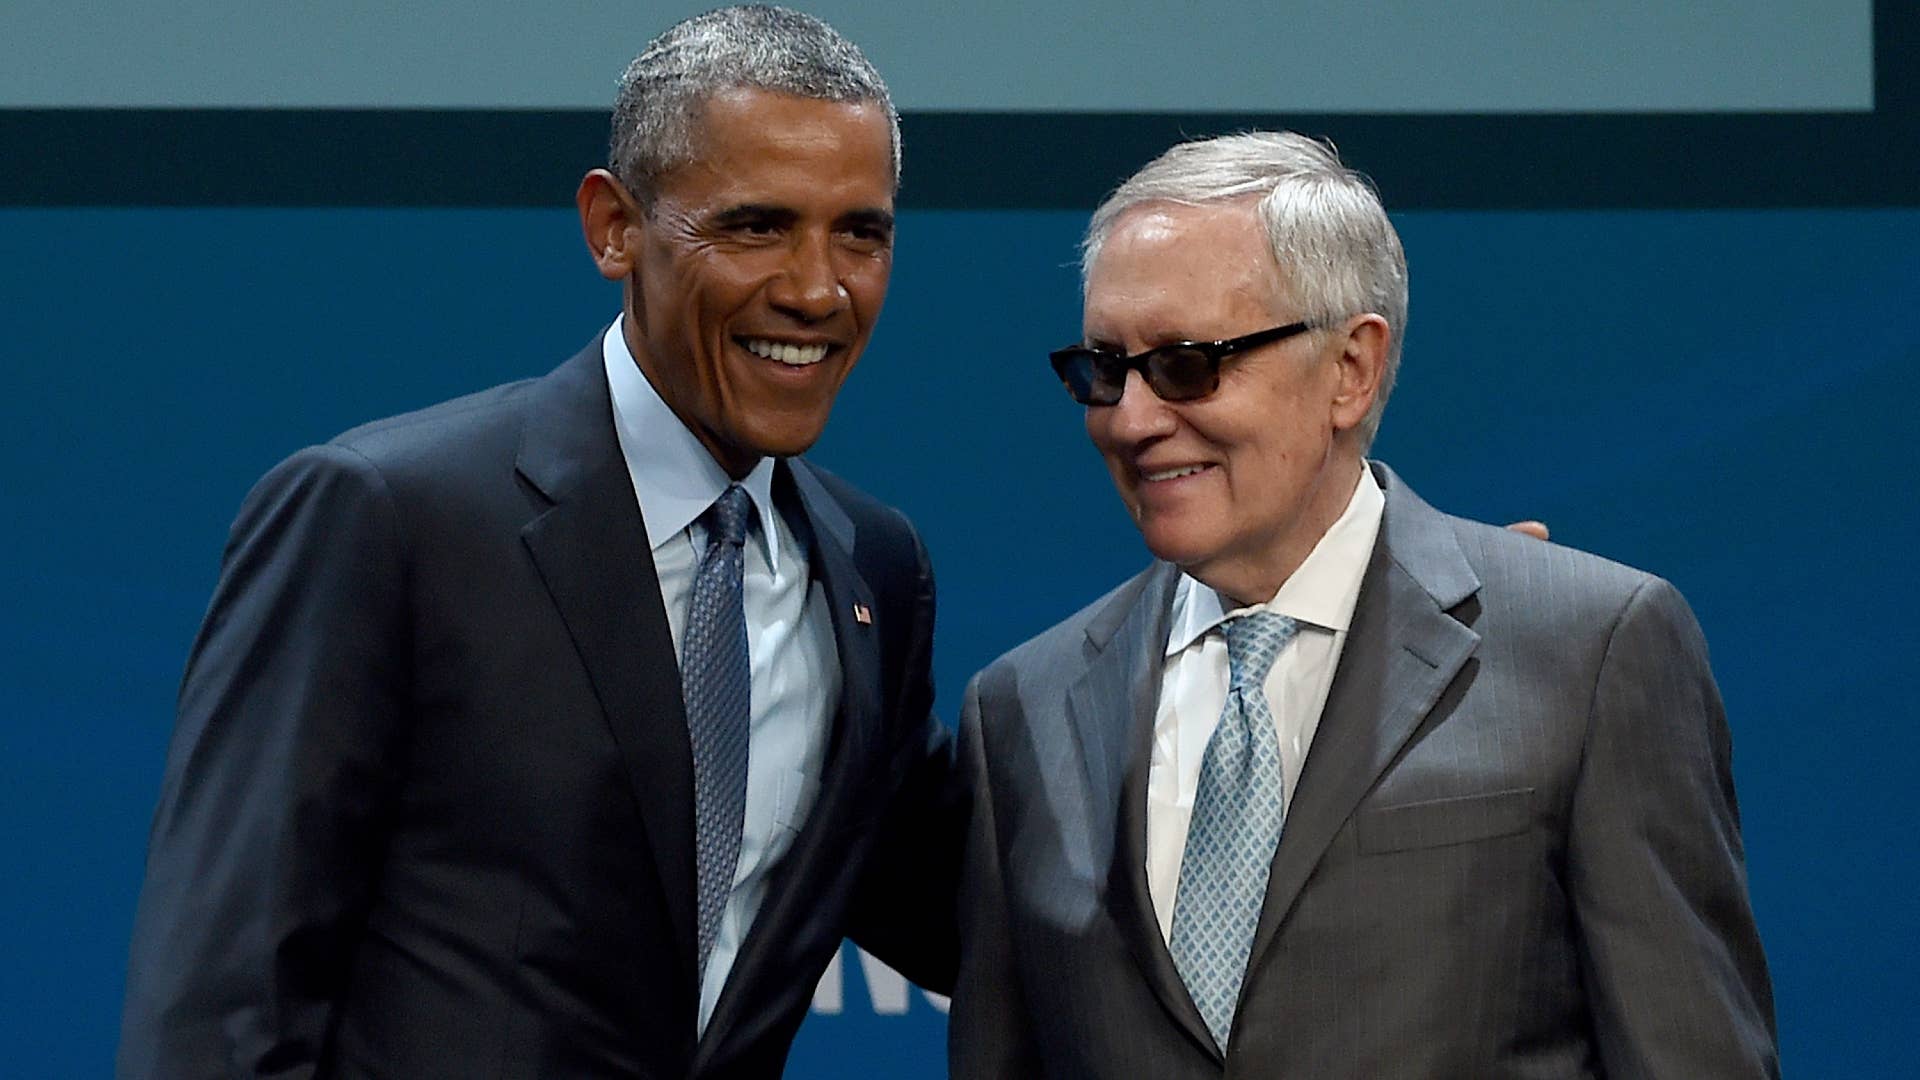 Barack Obama and Harry Reid take a photo